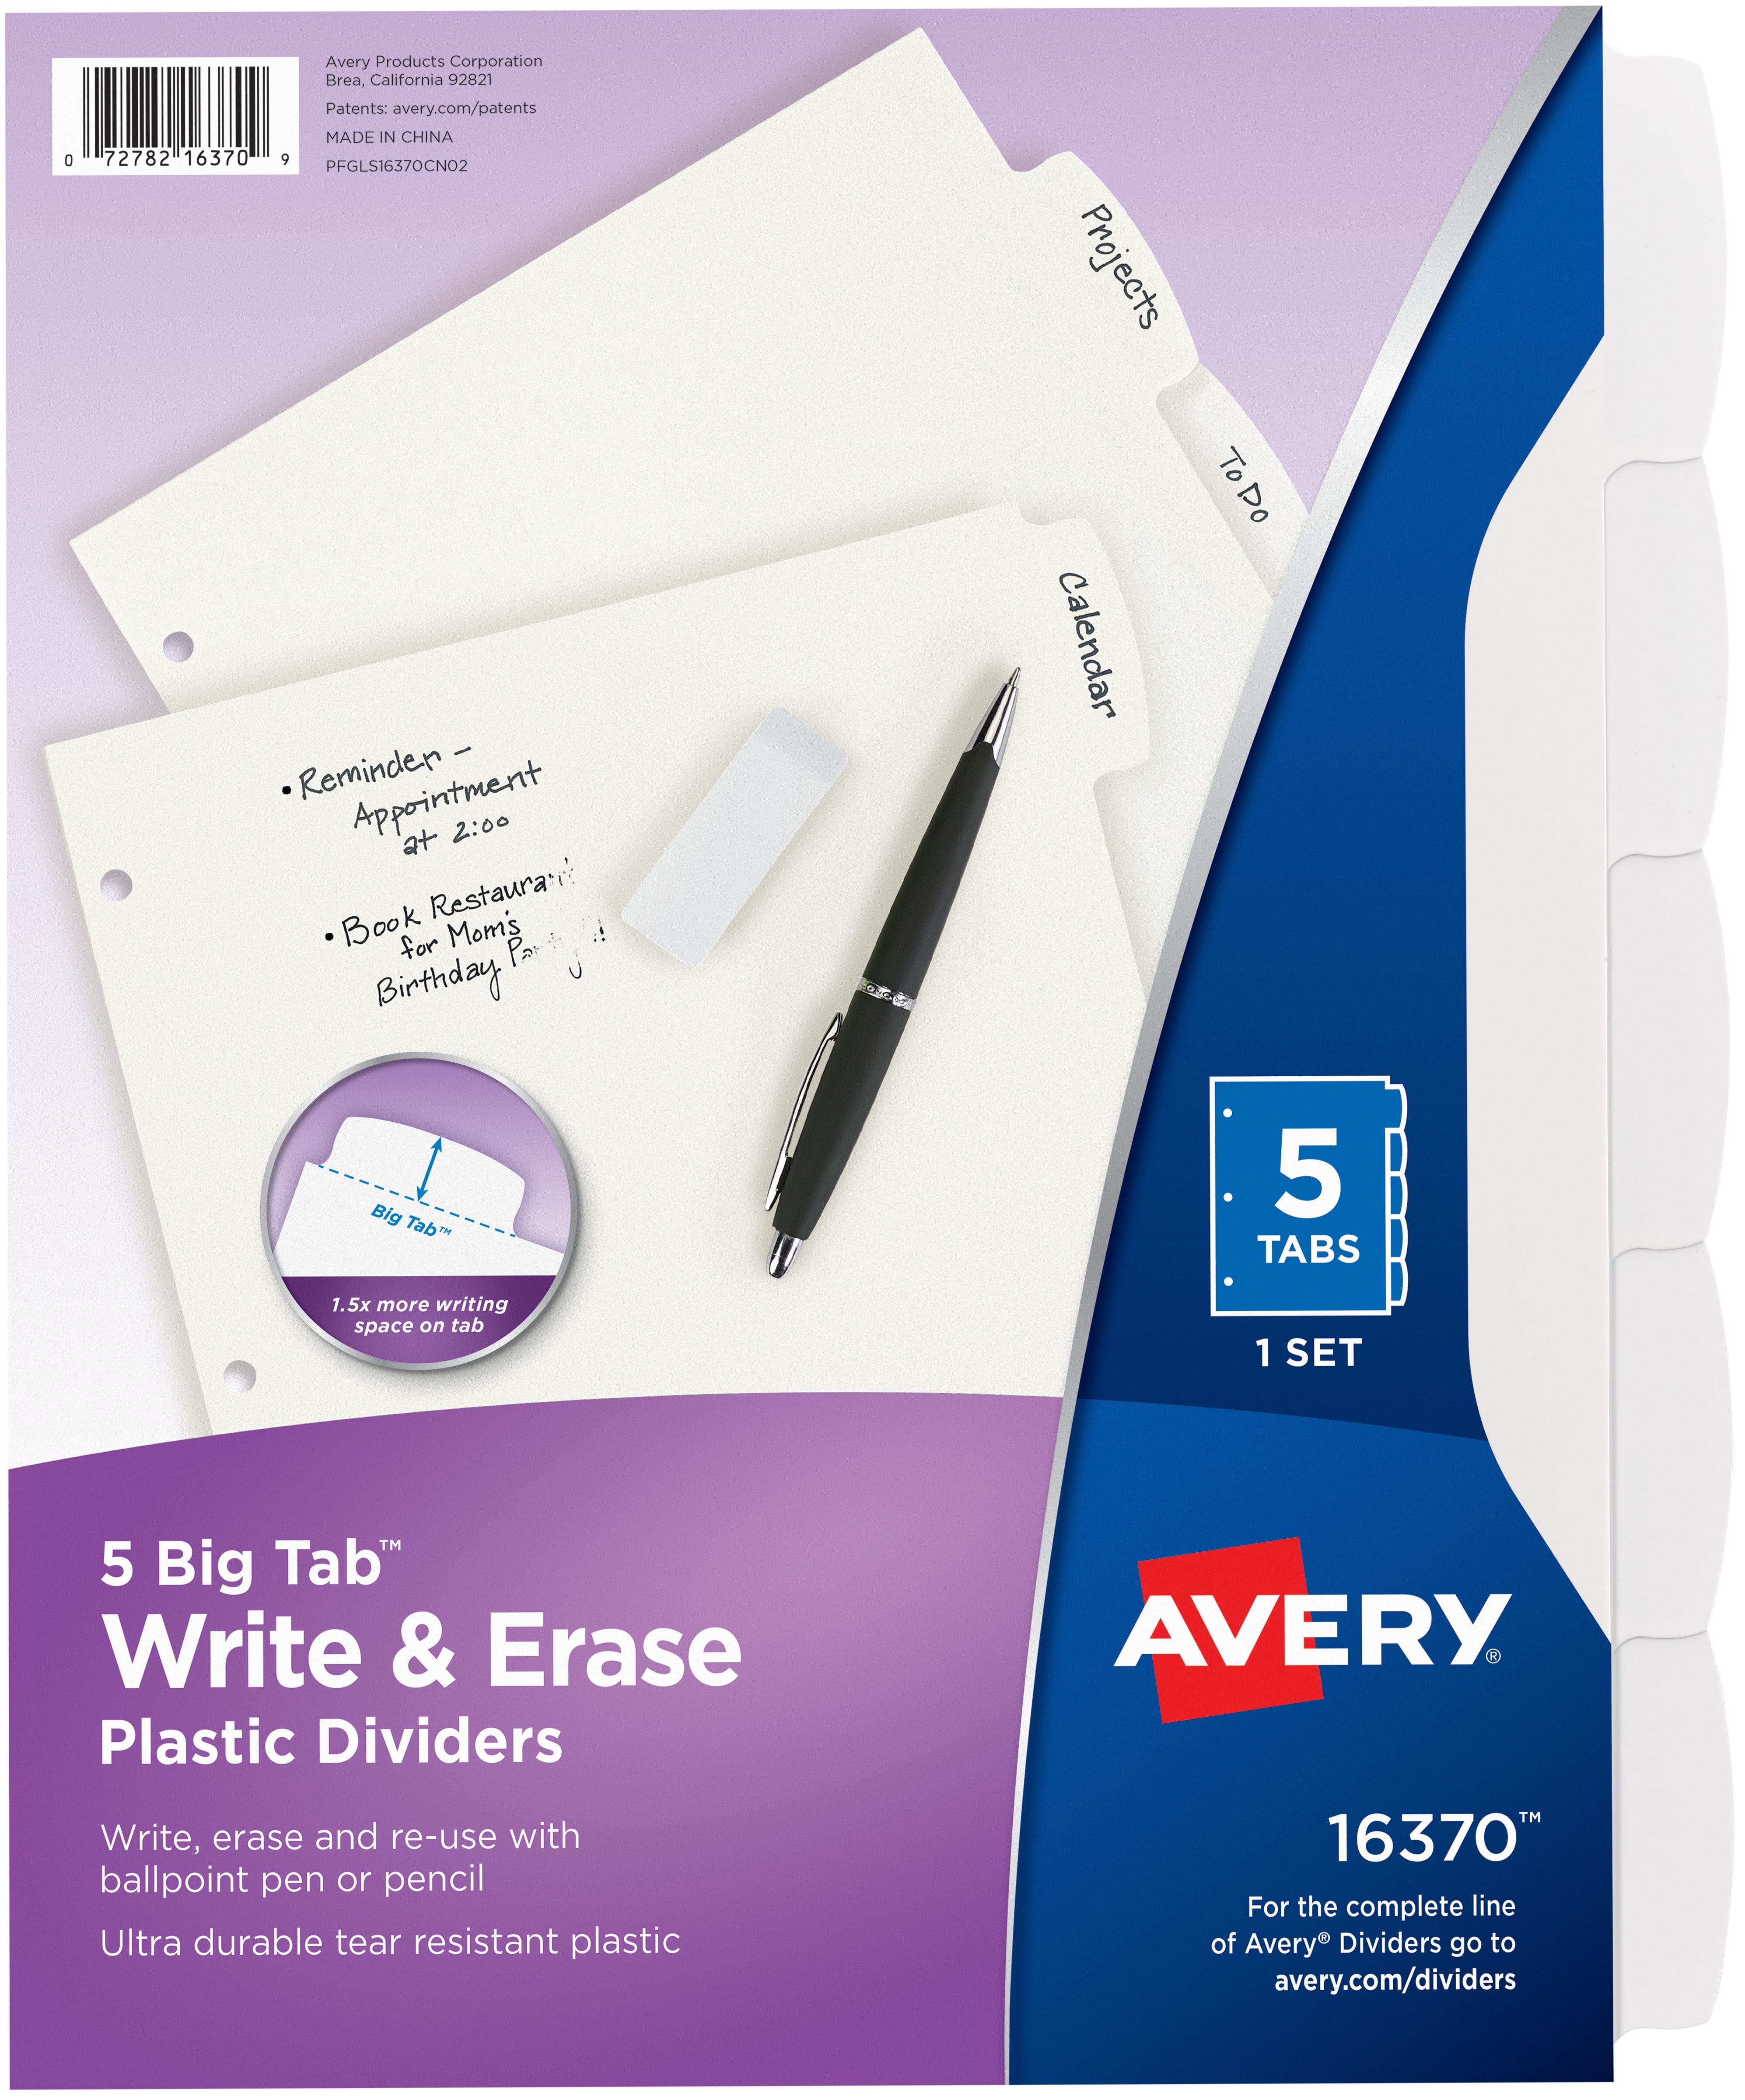 Avery Big Tab Reversible Fashion Dividers Emojis 24974 5-Tab Set